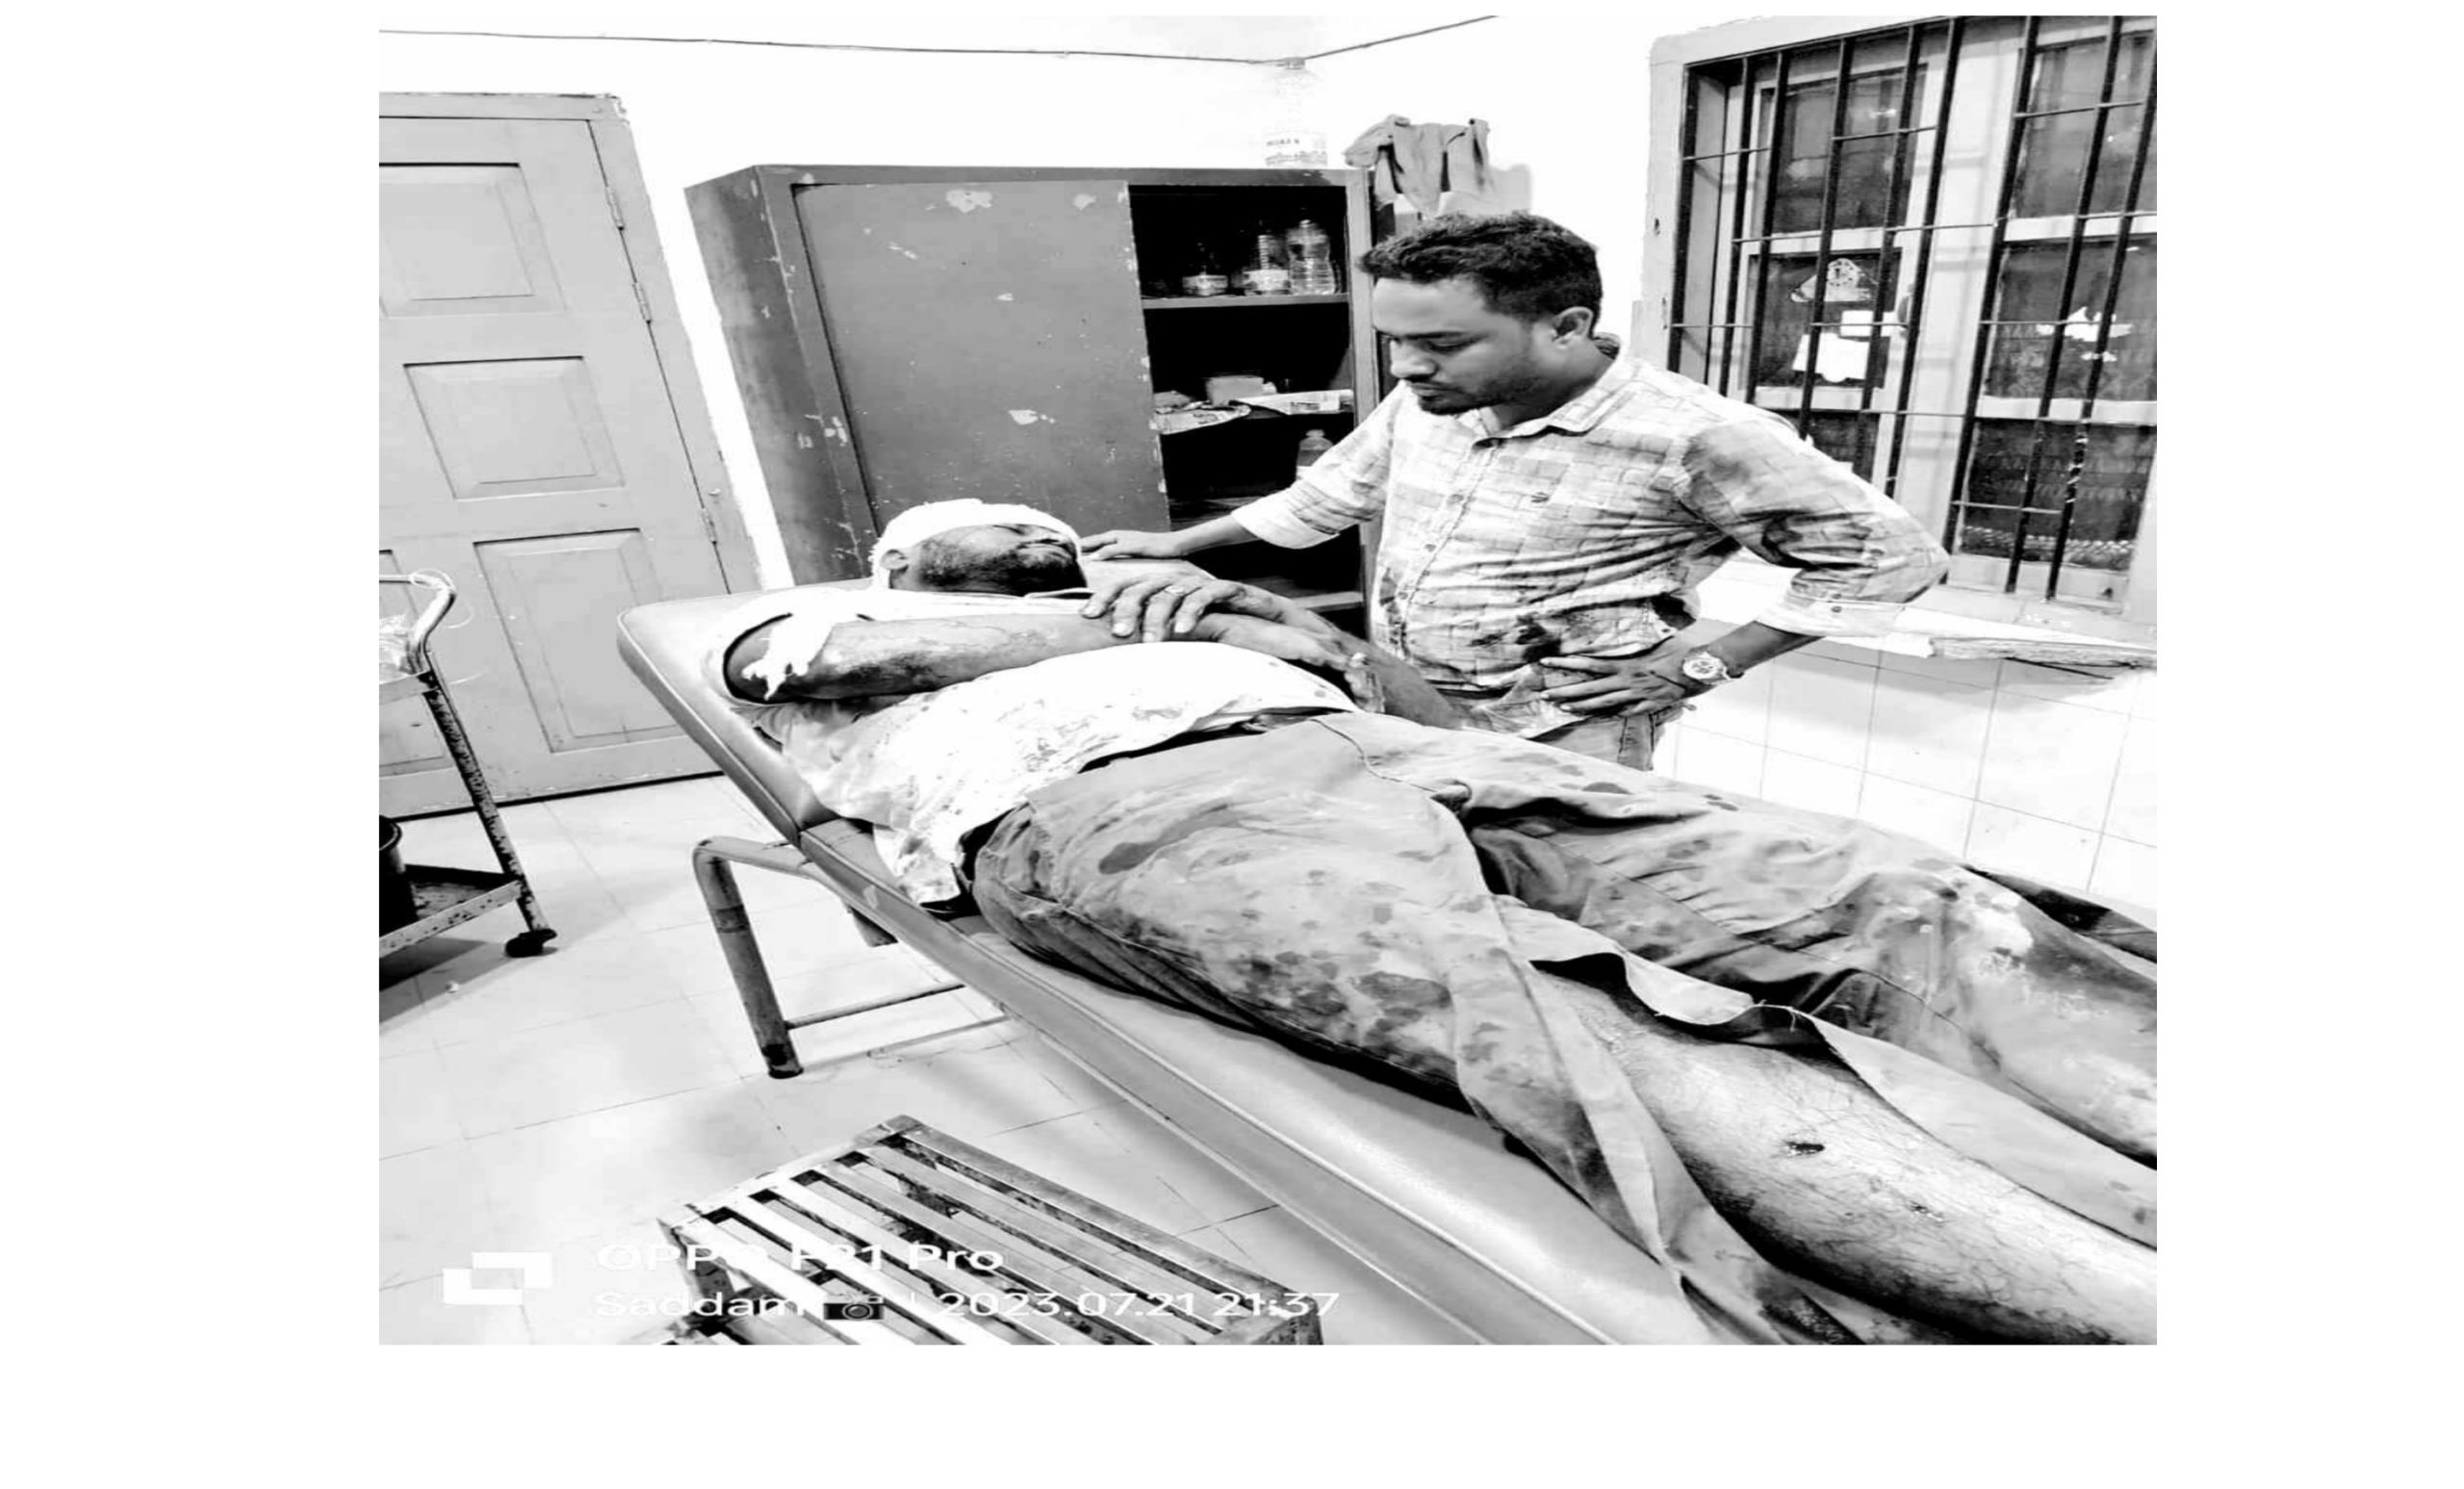 ইয়াবার চালান ধরিয়ে দেয়ার অজুহাতে শাহাব উদ্দিন সিকদারকে হত্যাচেষ্টা